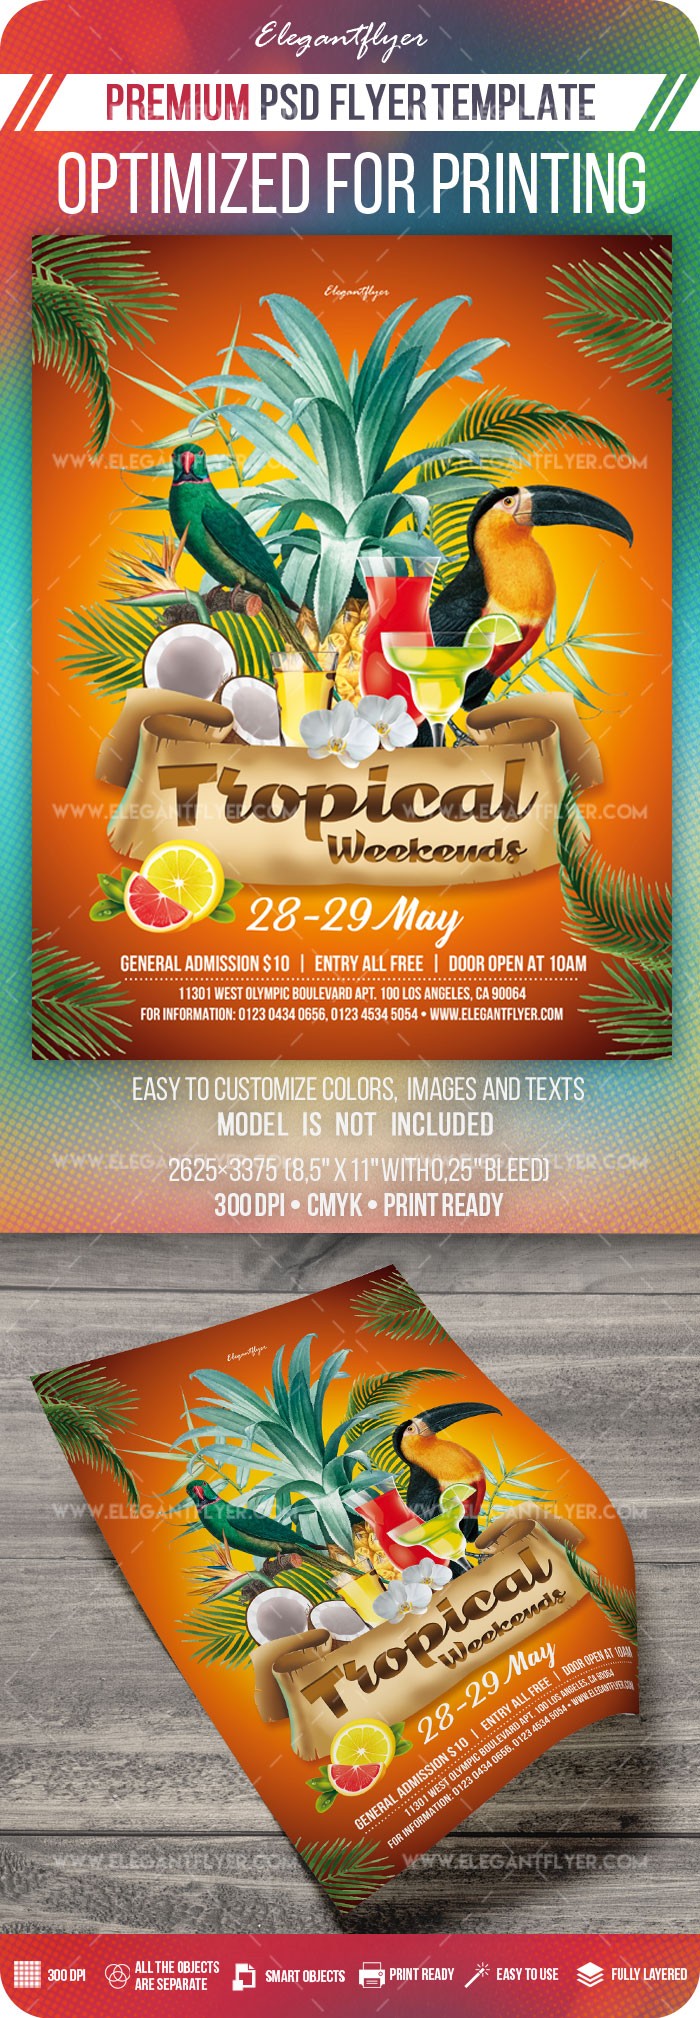 Tropical Weekends by ElegantFlyer